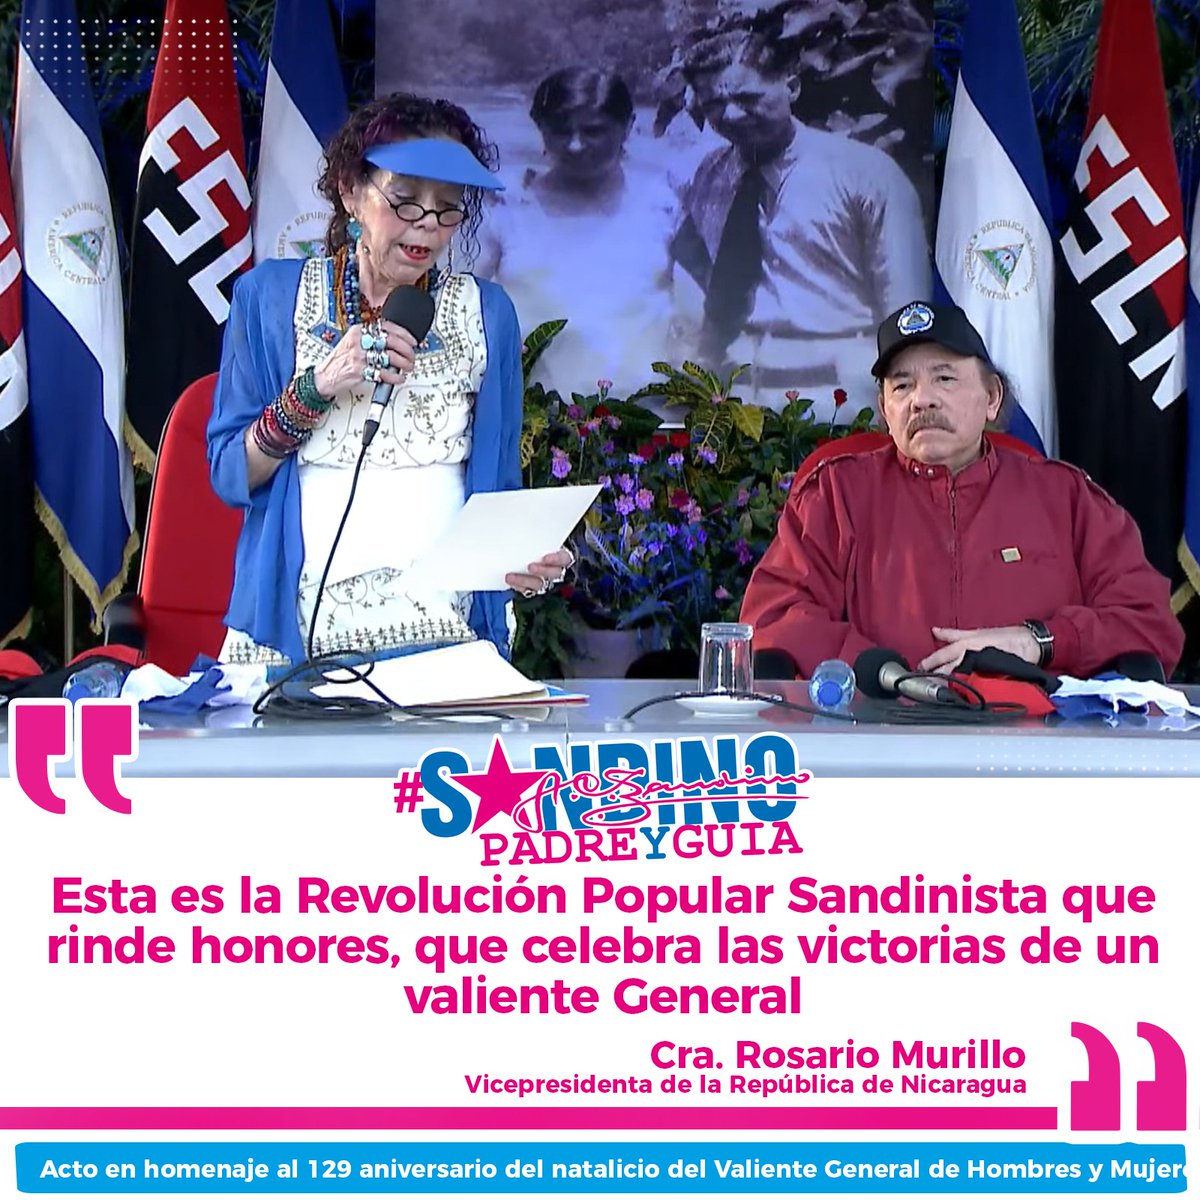 #SANDINOPADREYGUÍA la lucha sigue #SomosUNAN
#4519LaPatriaLaRevolución
#ManaguaSandinista